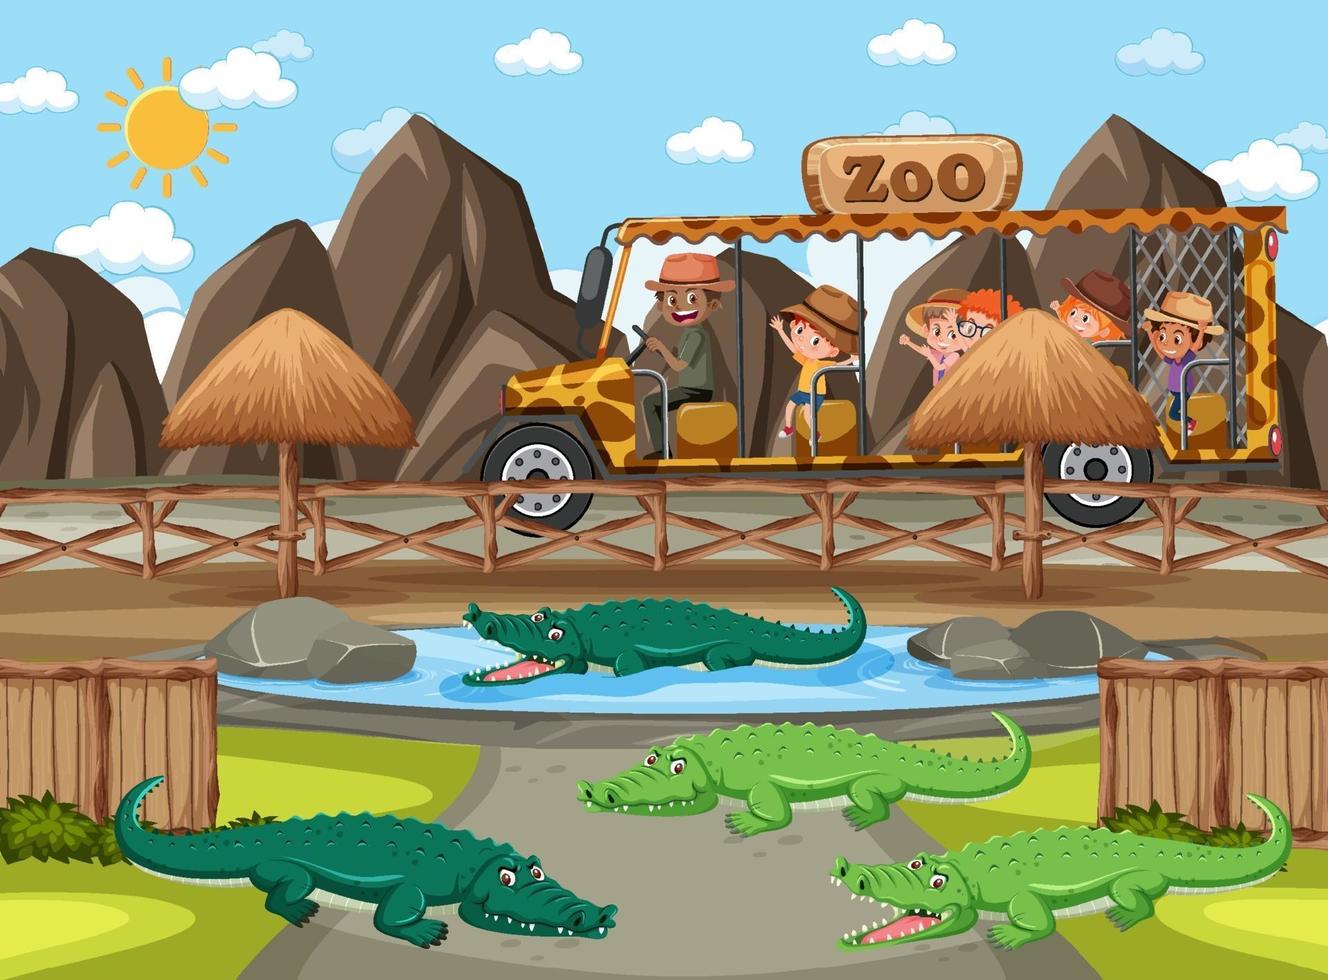 bambini in automobile turistica guardando il gruppo di alligatori nella scena dello zoo vettore